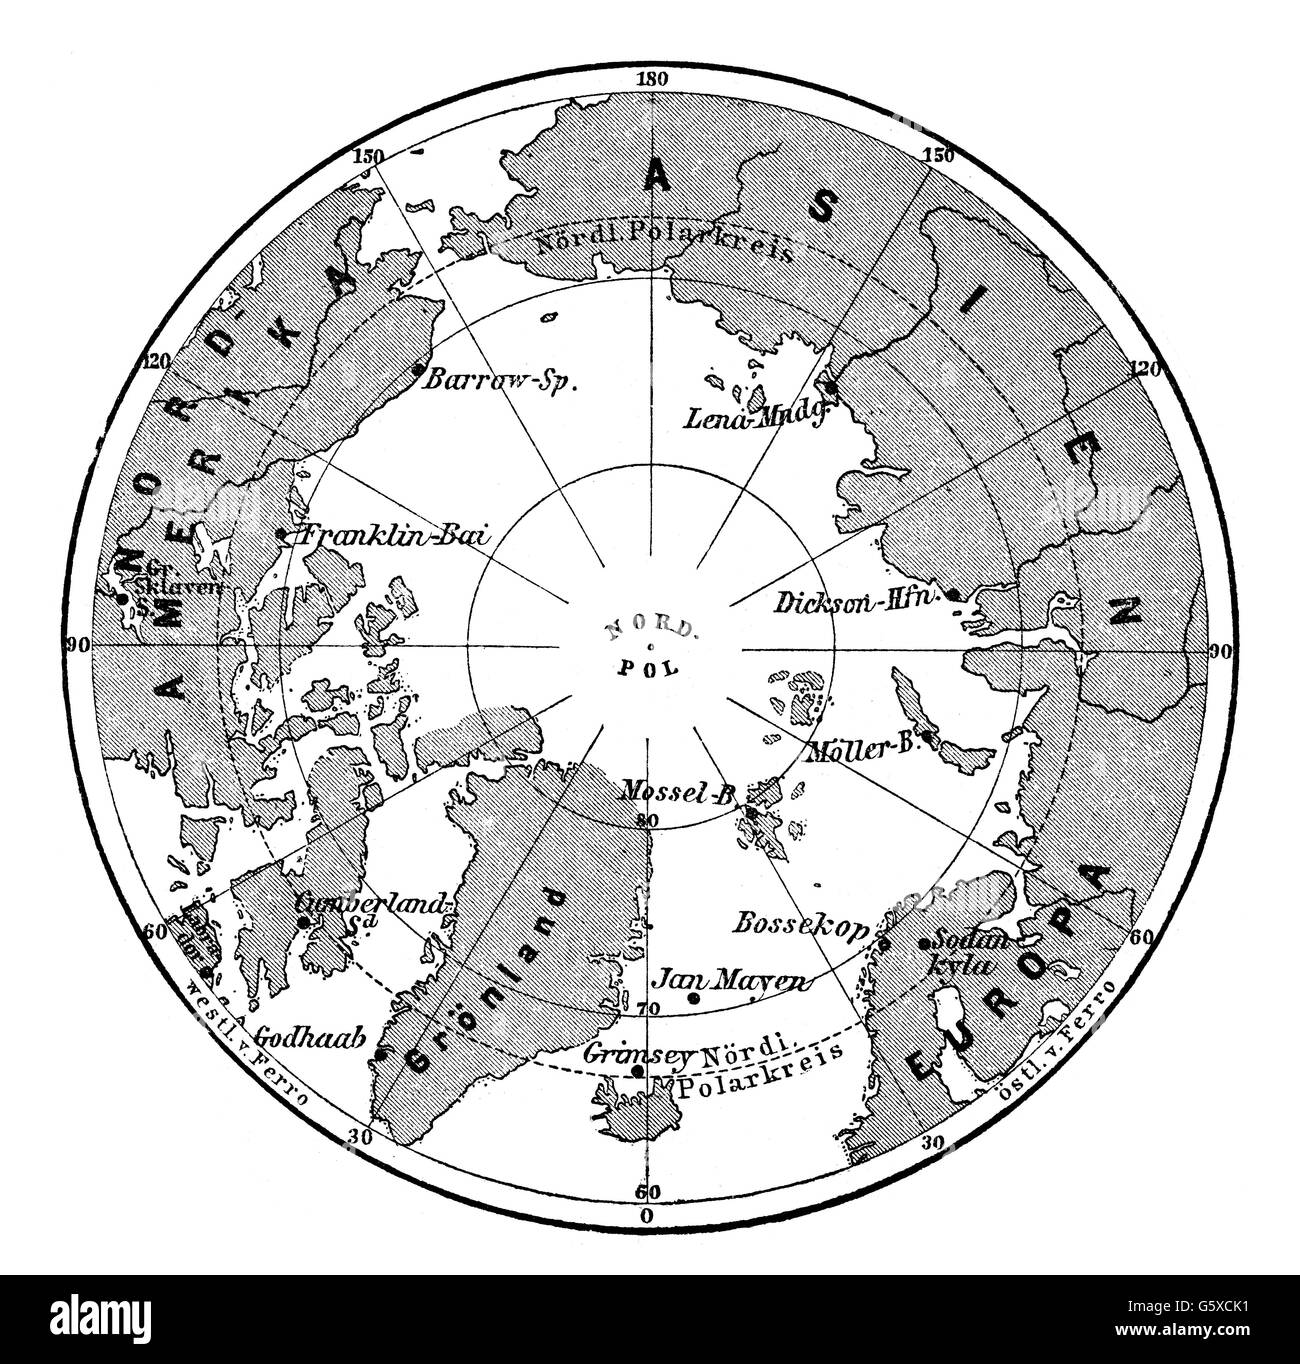 Cartographie, carte, arctique, stations de recherche polaire internationale, gravure sur bois, 24.6.1882, droits additionnels-Clearences-non disponible Banque D'Images